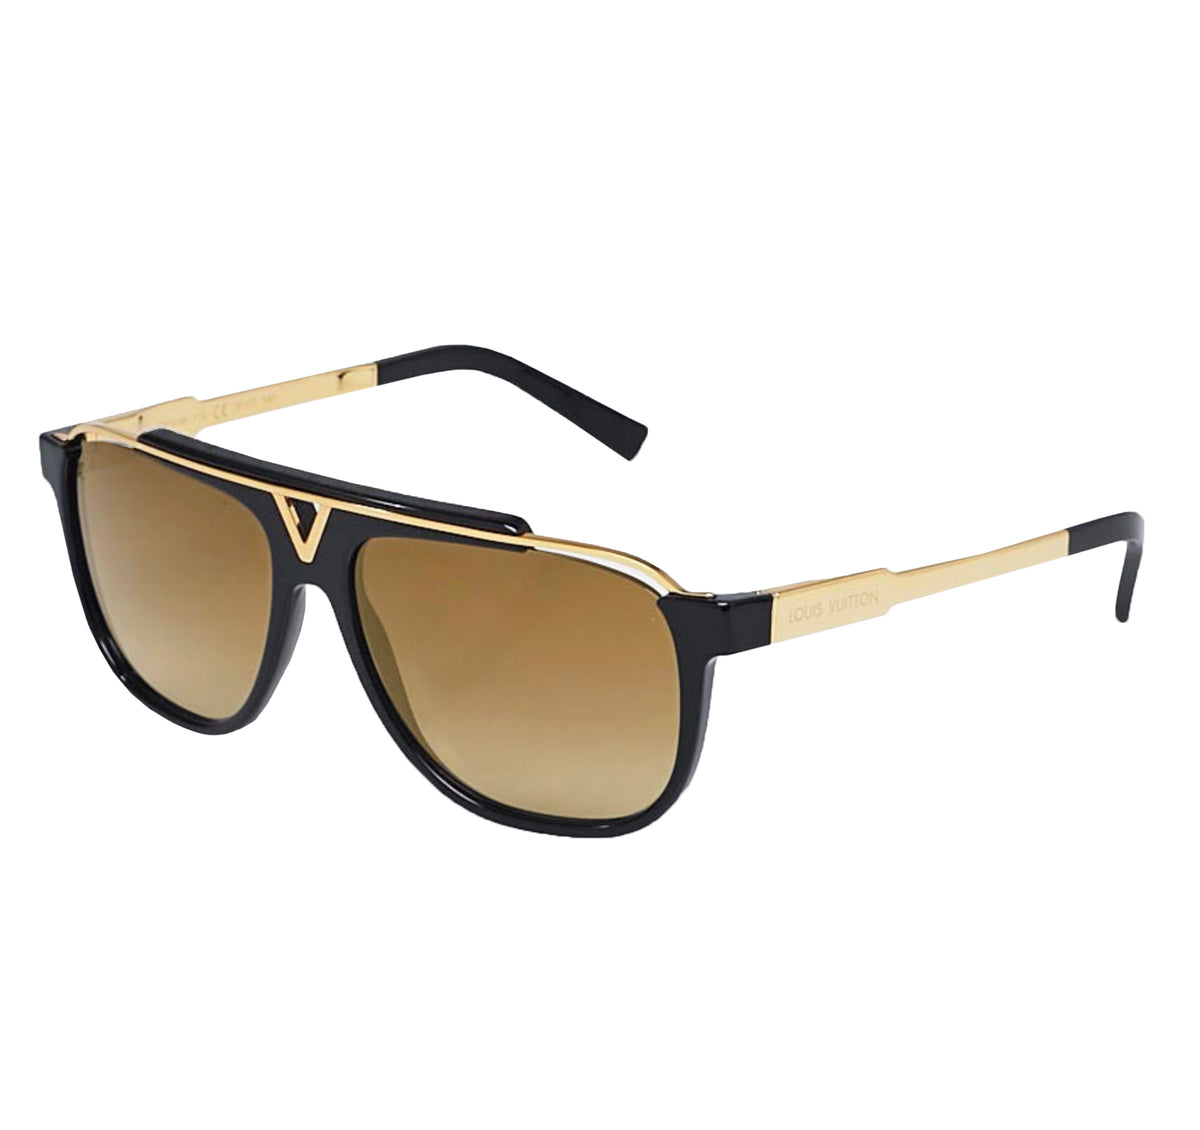 Louis Vuitton Mascot Sunglasses REVIEW 